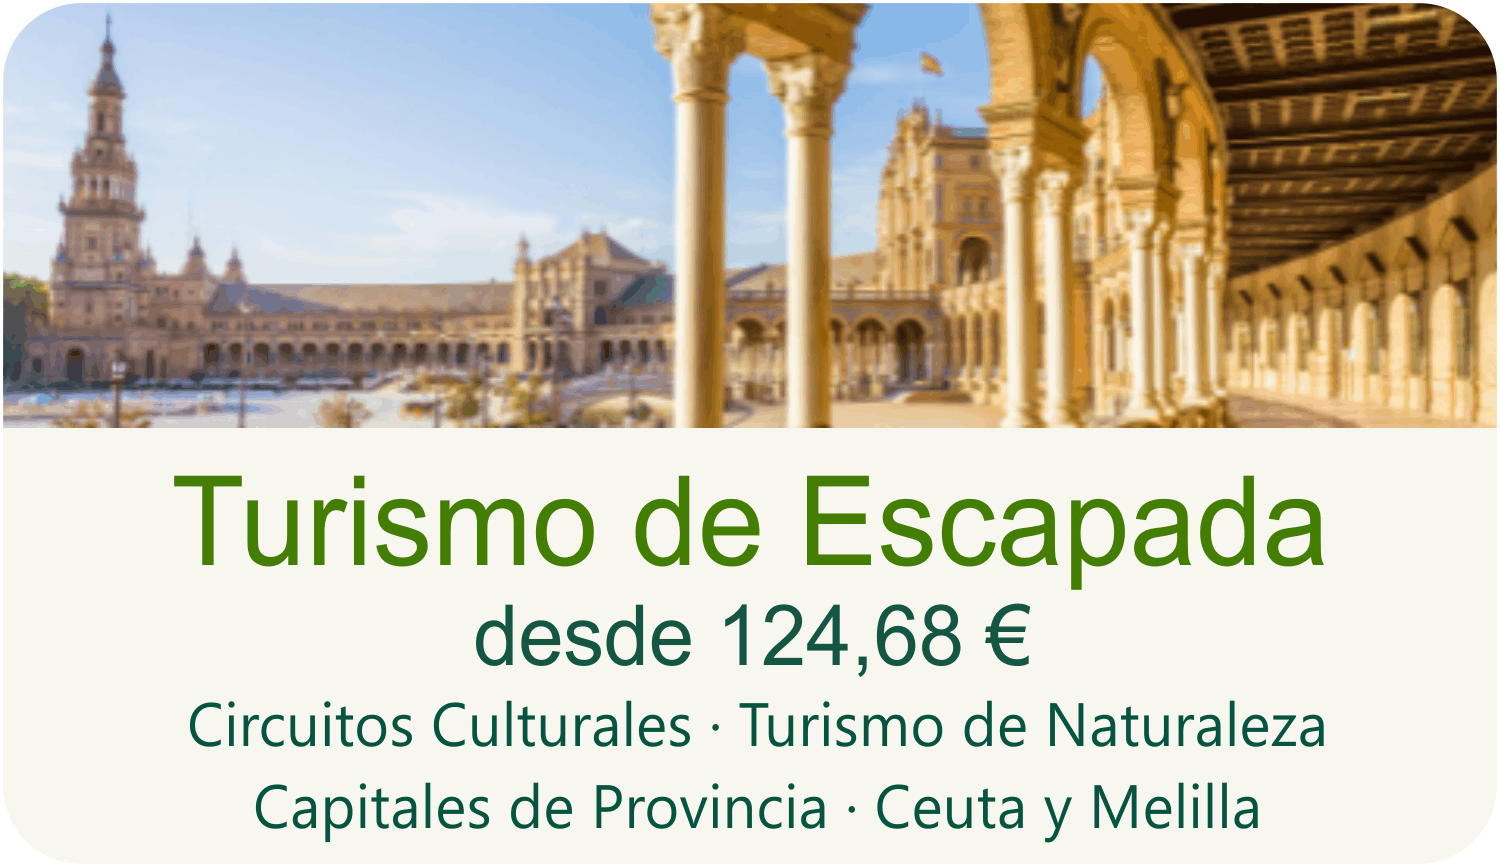 Turismo de Escapada desde 124,68 euros. Circuitos Culturales, Turismo de Naturaleza, Capitales de Provincia, Ceuta y Melilla